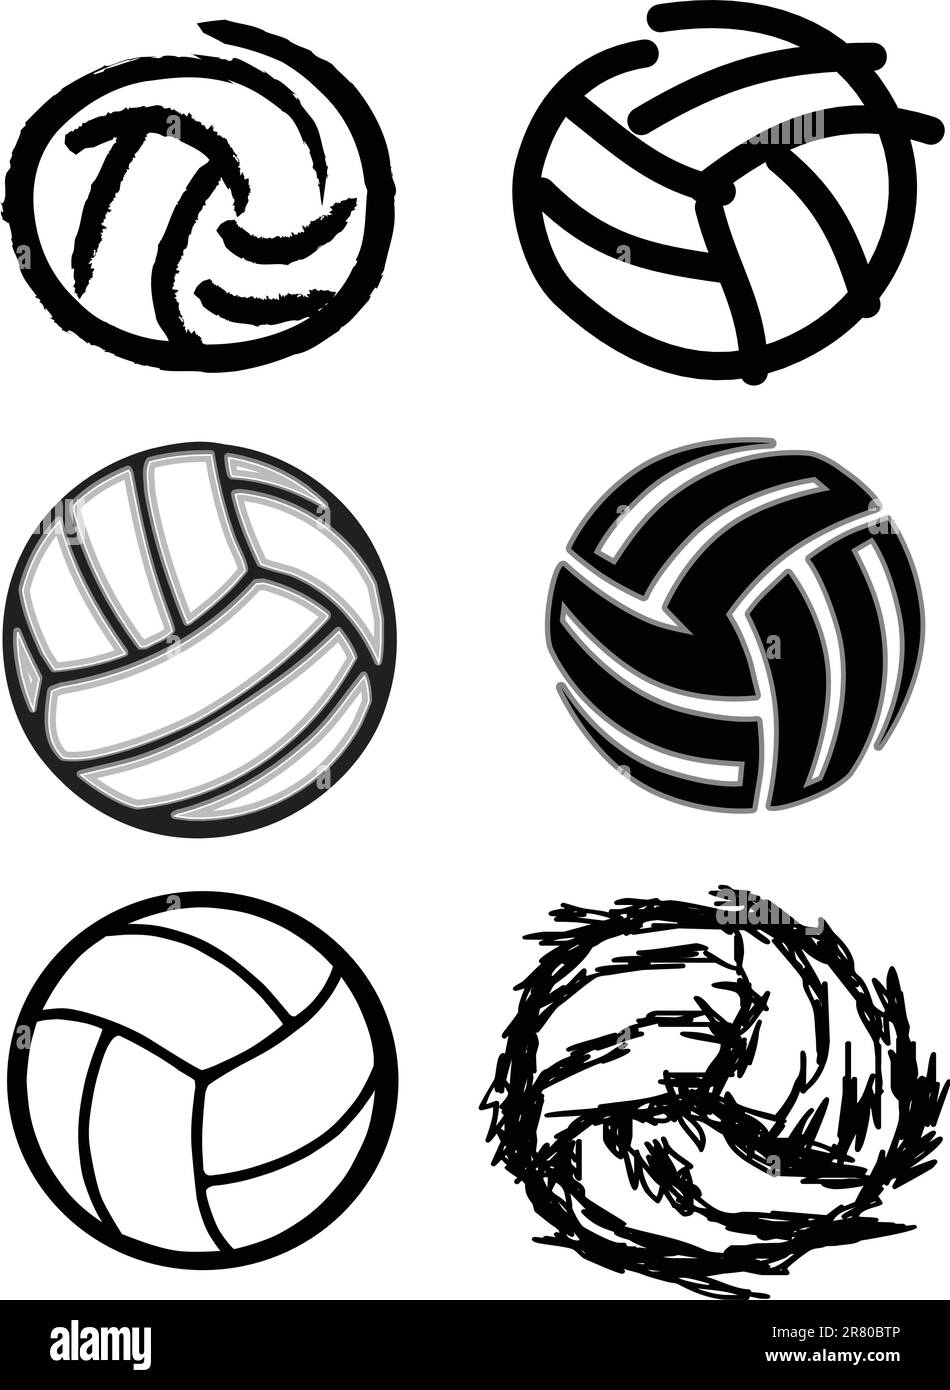 Vektorgruppe von sechs Volleyball-Illustrationen Stock Vektor